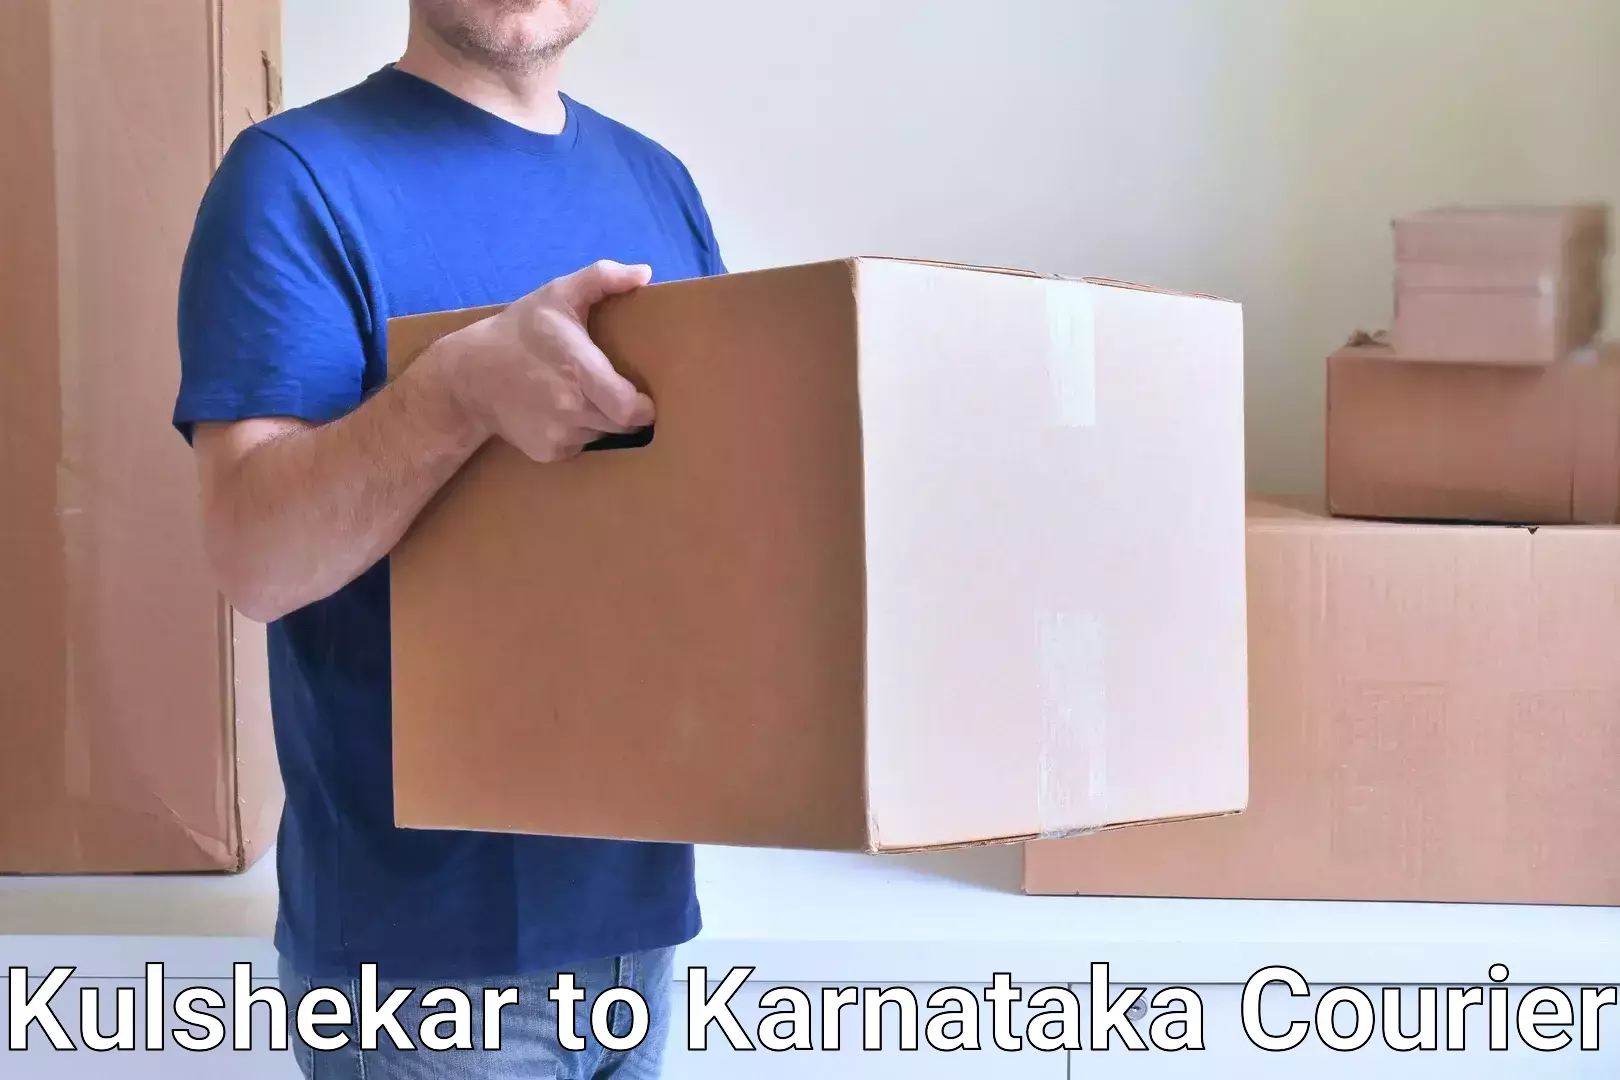 24/7 courier service Kulshekar to Karnataka